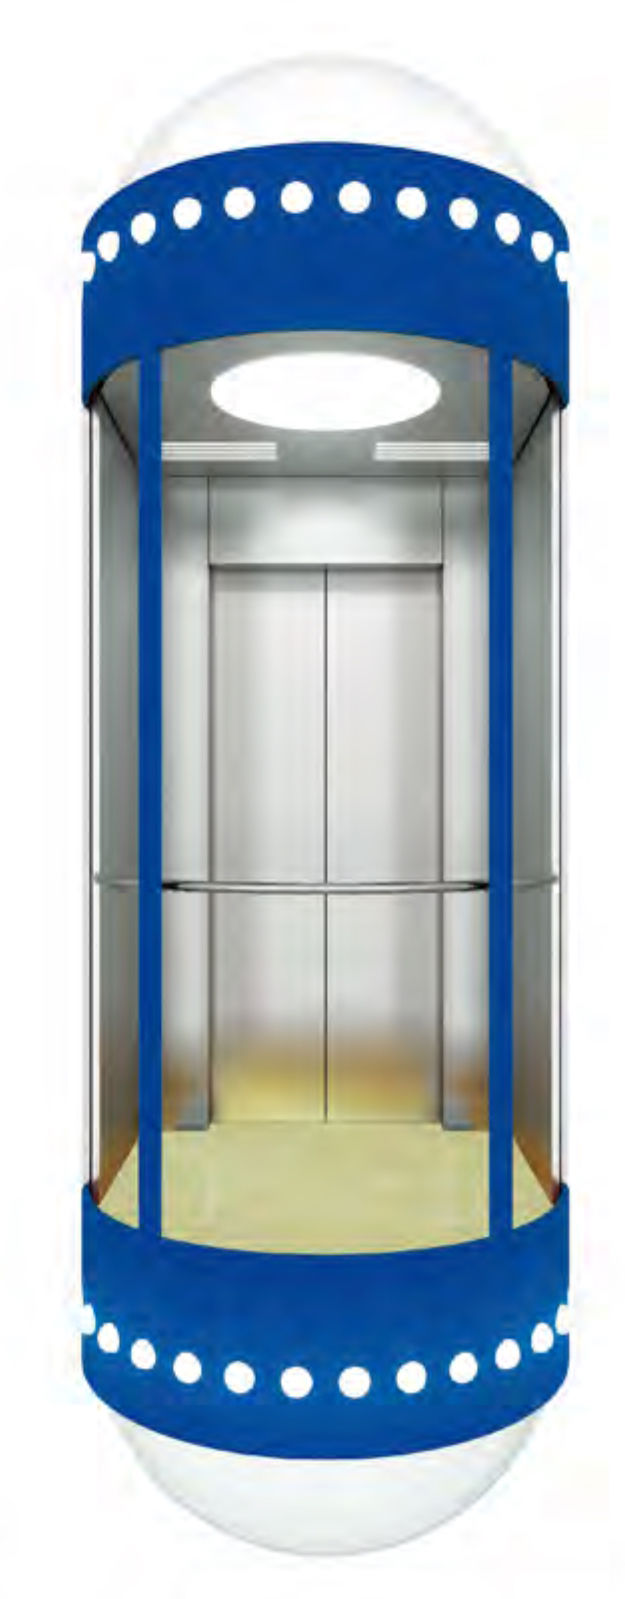 Подъем 3 пассажира лифта панорамного лифта поставки фабрики осмотр достопримечательностей